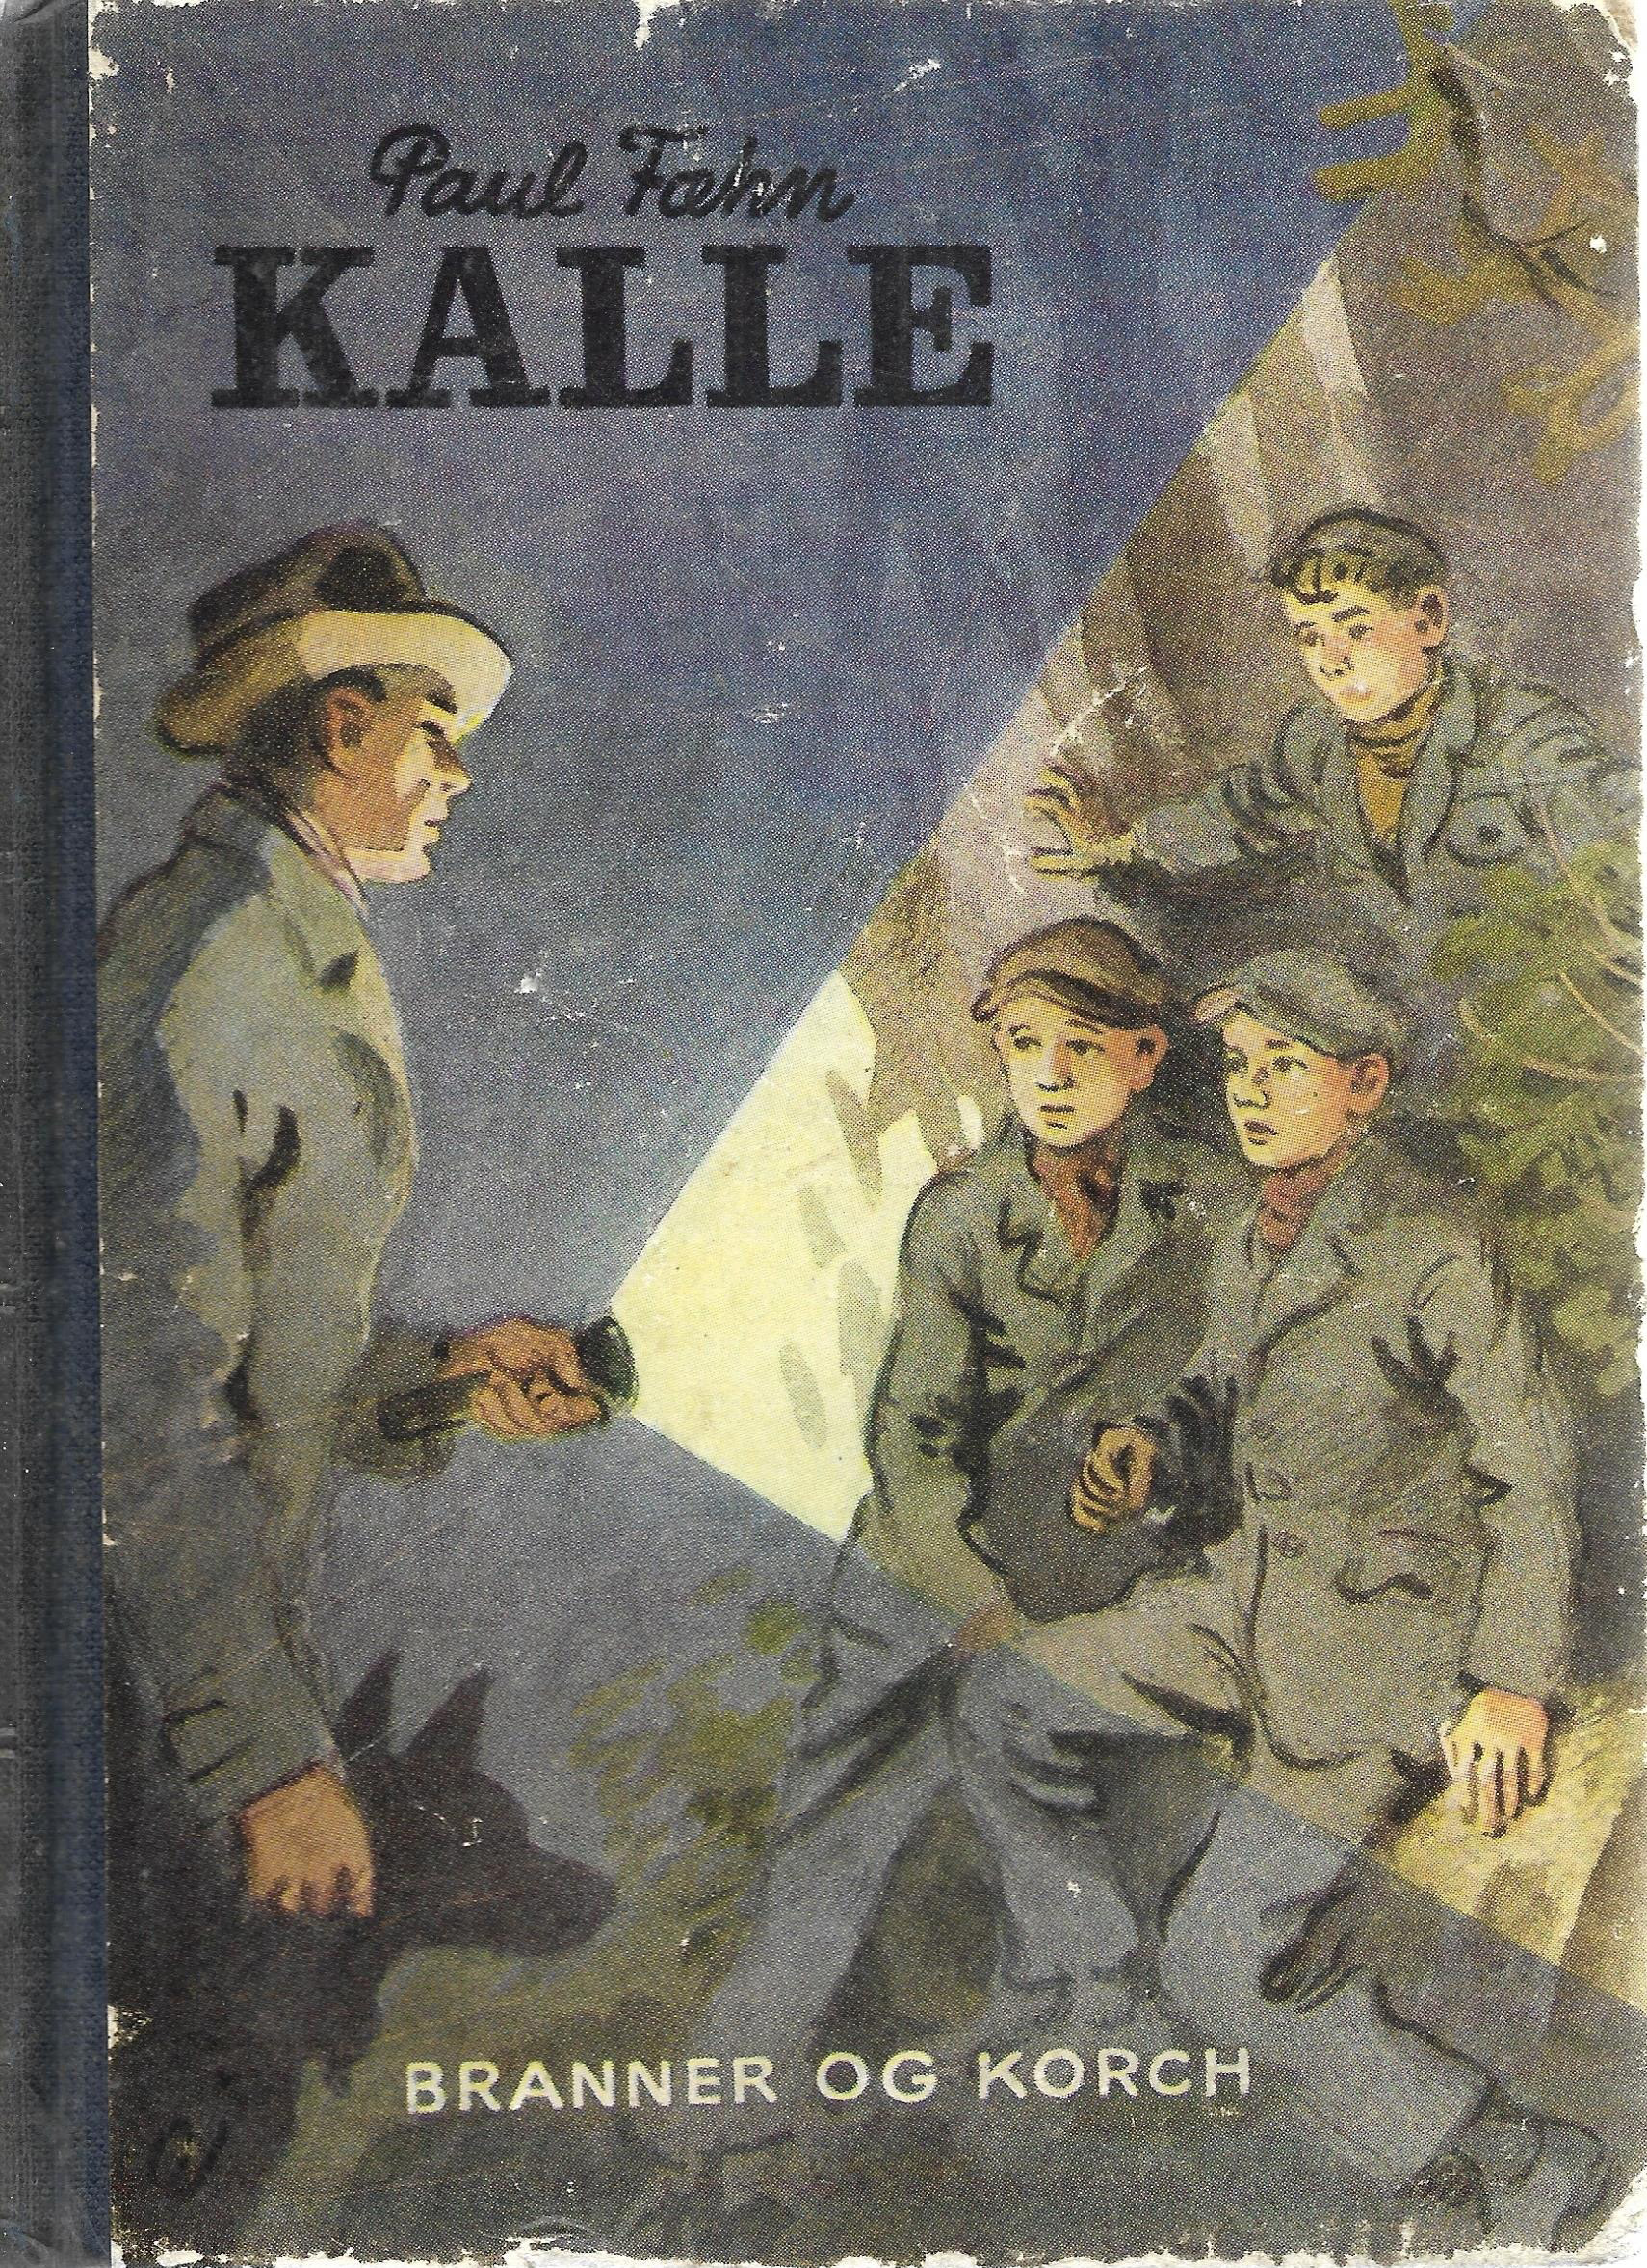 Kalle - Paul Fæhn 1951-1